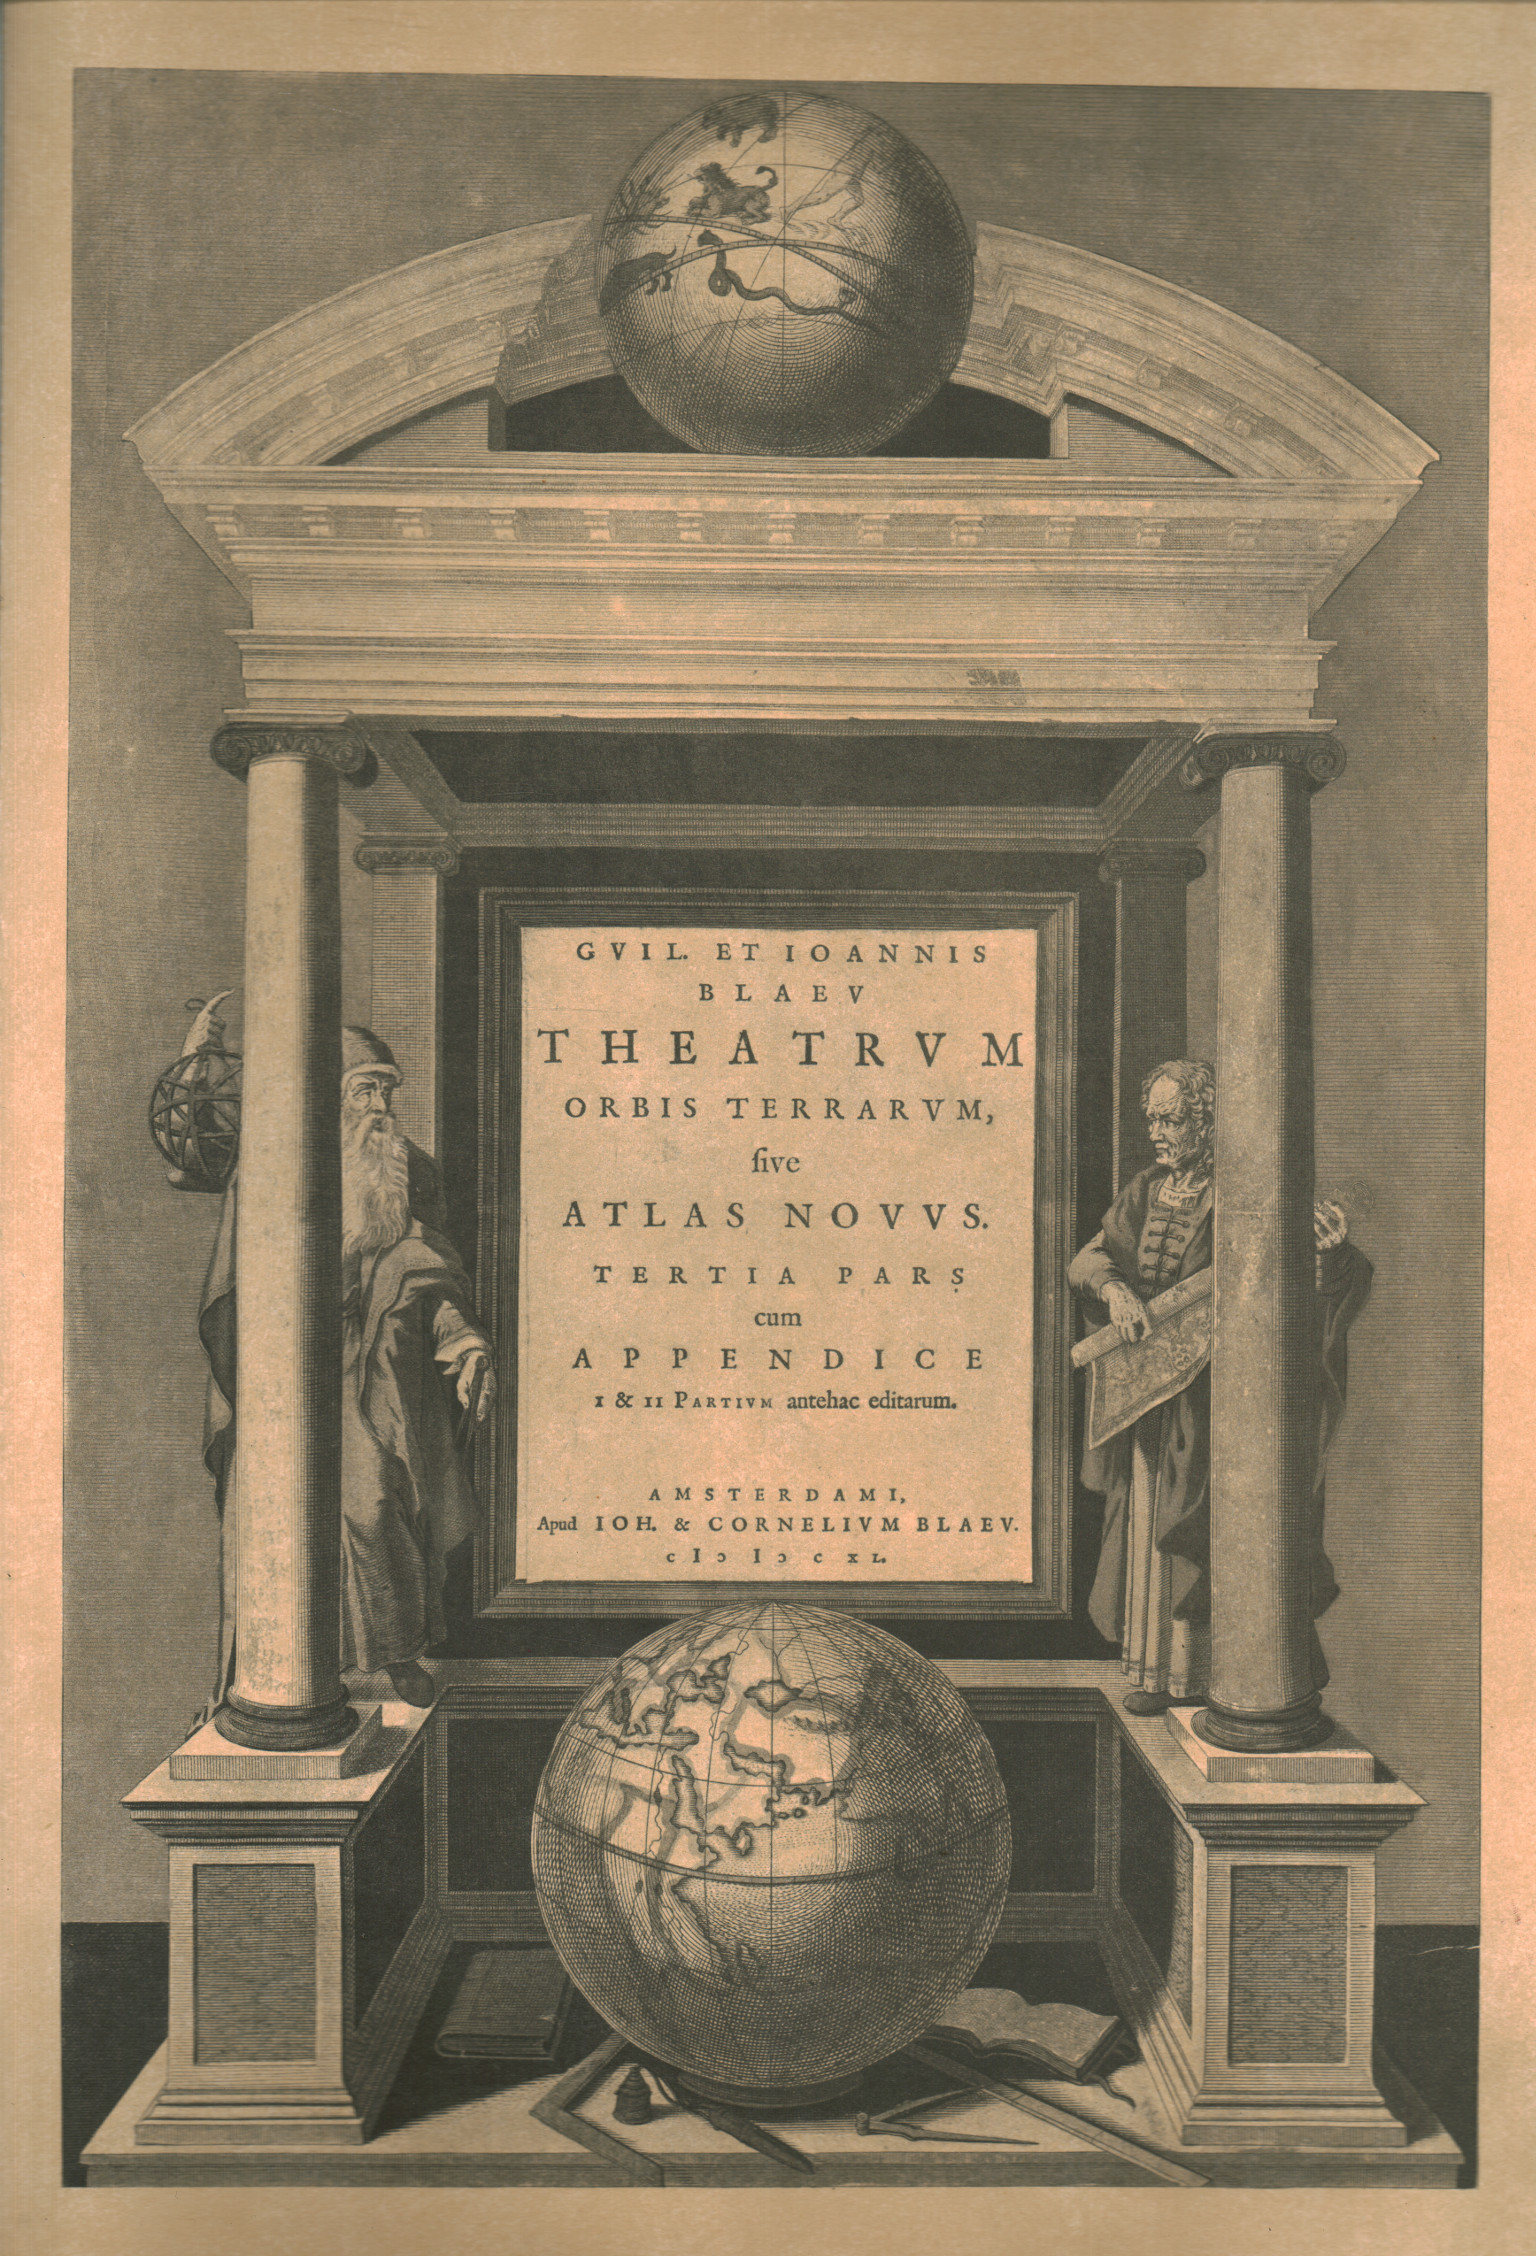 Theatrum, Theatrum orbis terrarum sive atlas novu, Theatrum orbis terrarum sive atlas novu, Theatrum orbis terrarum sive atlas novu